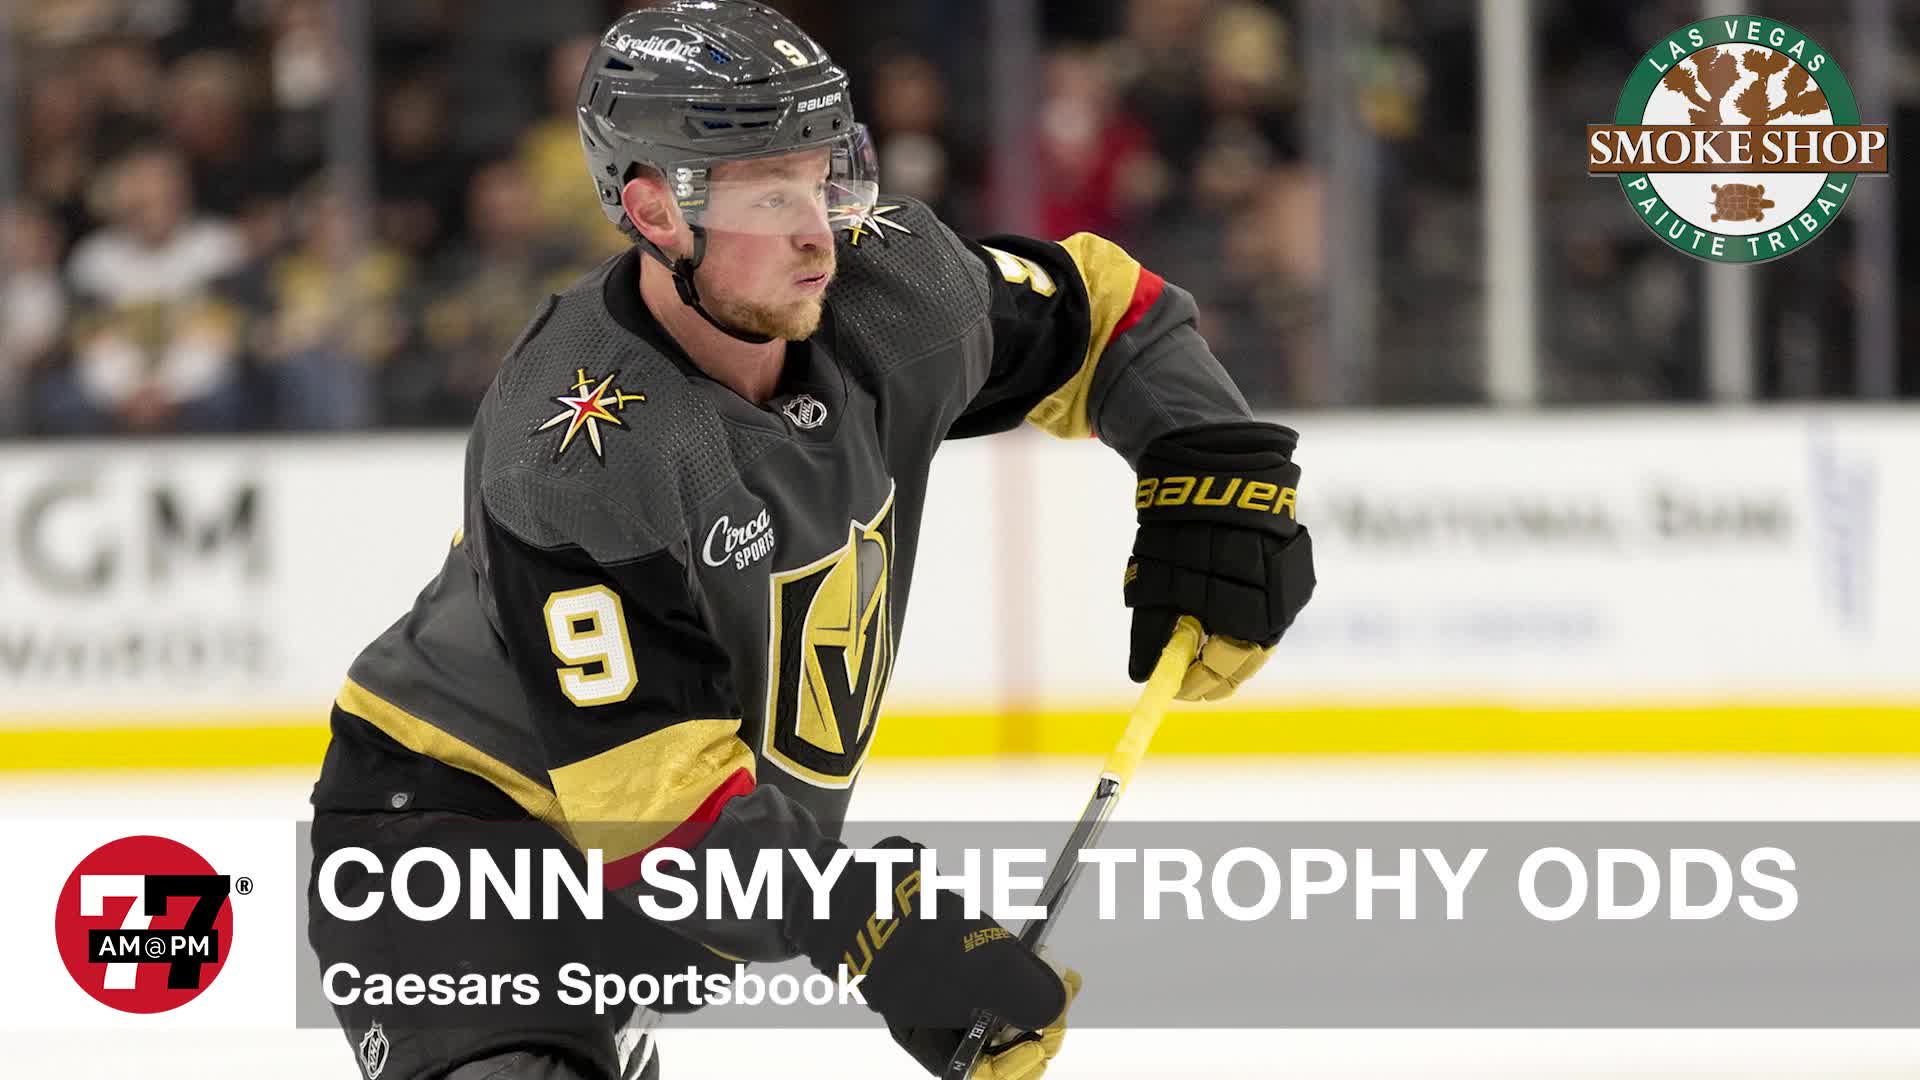 Conn Smythe trophy odds